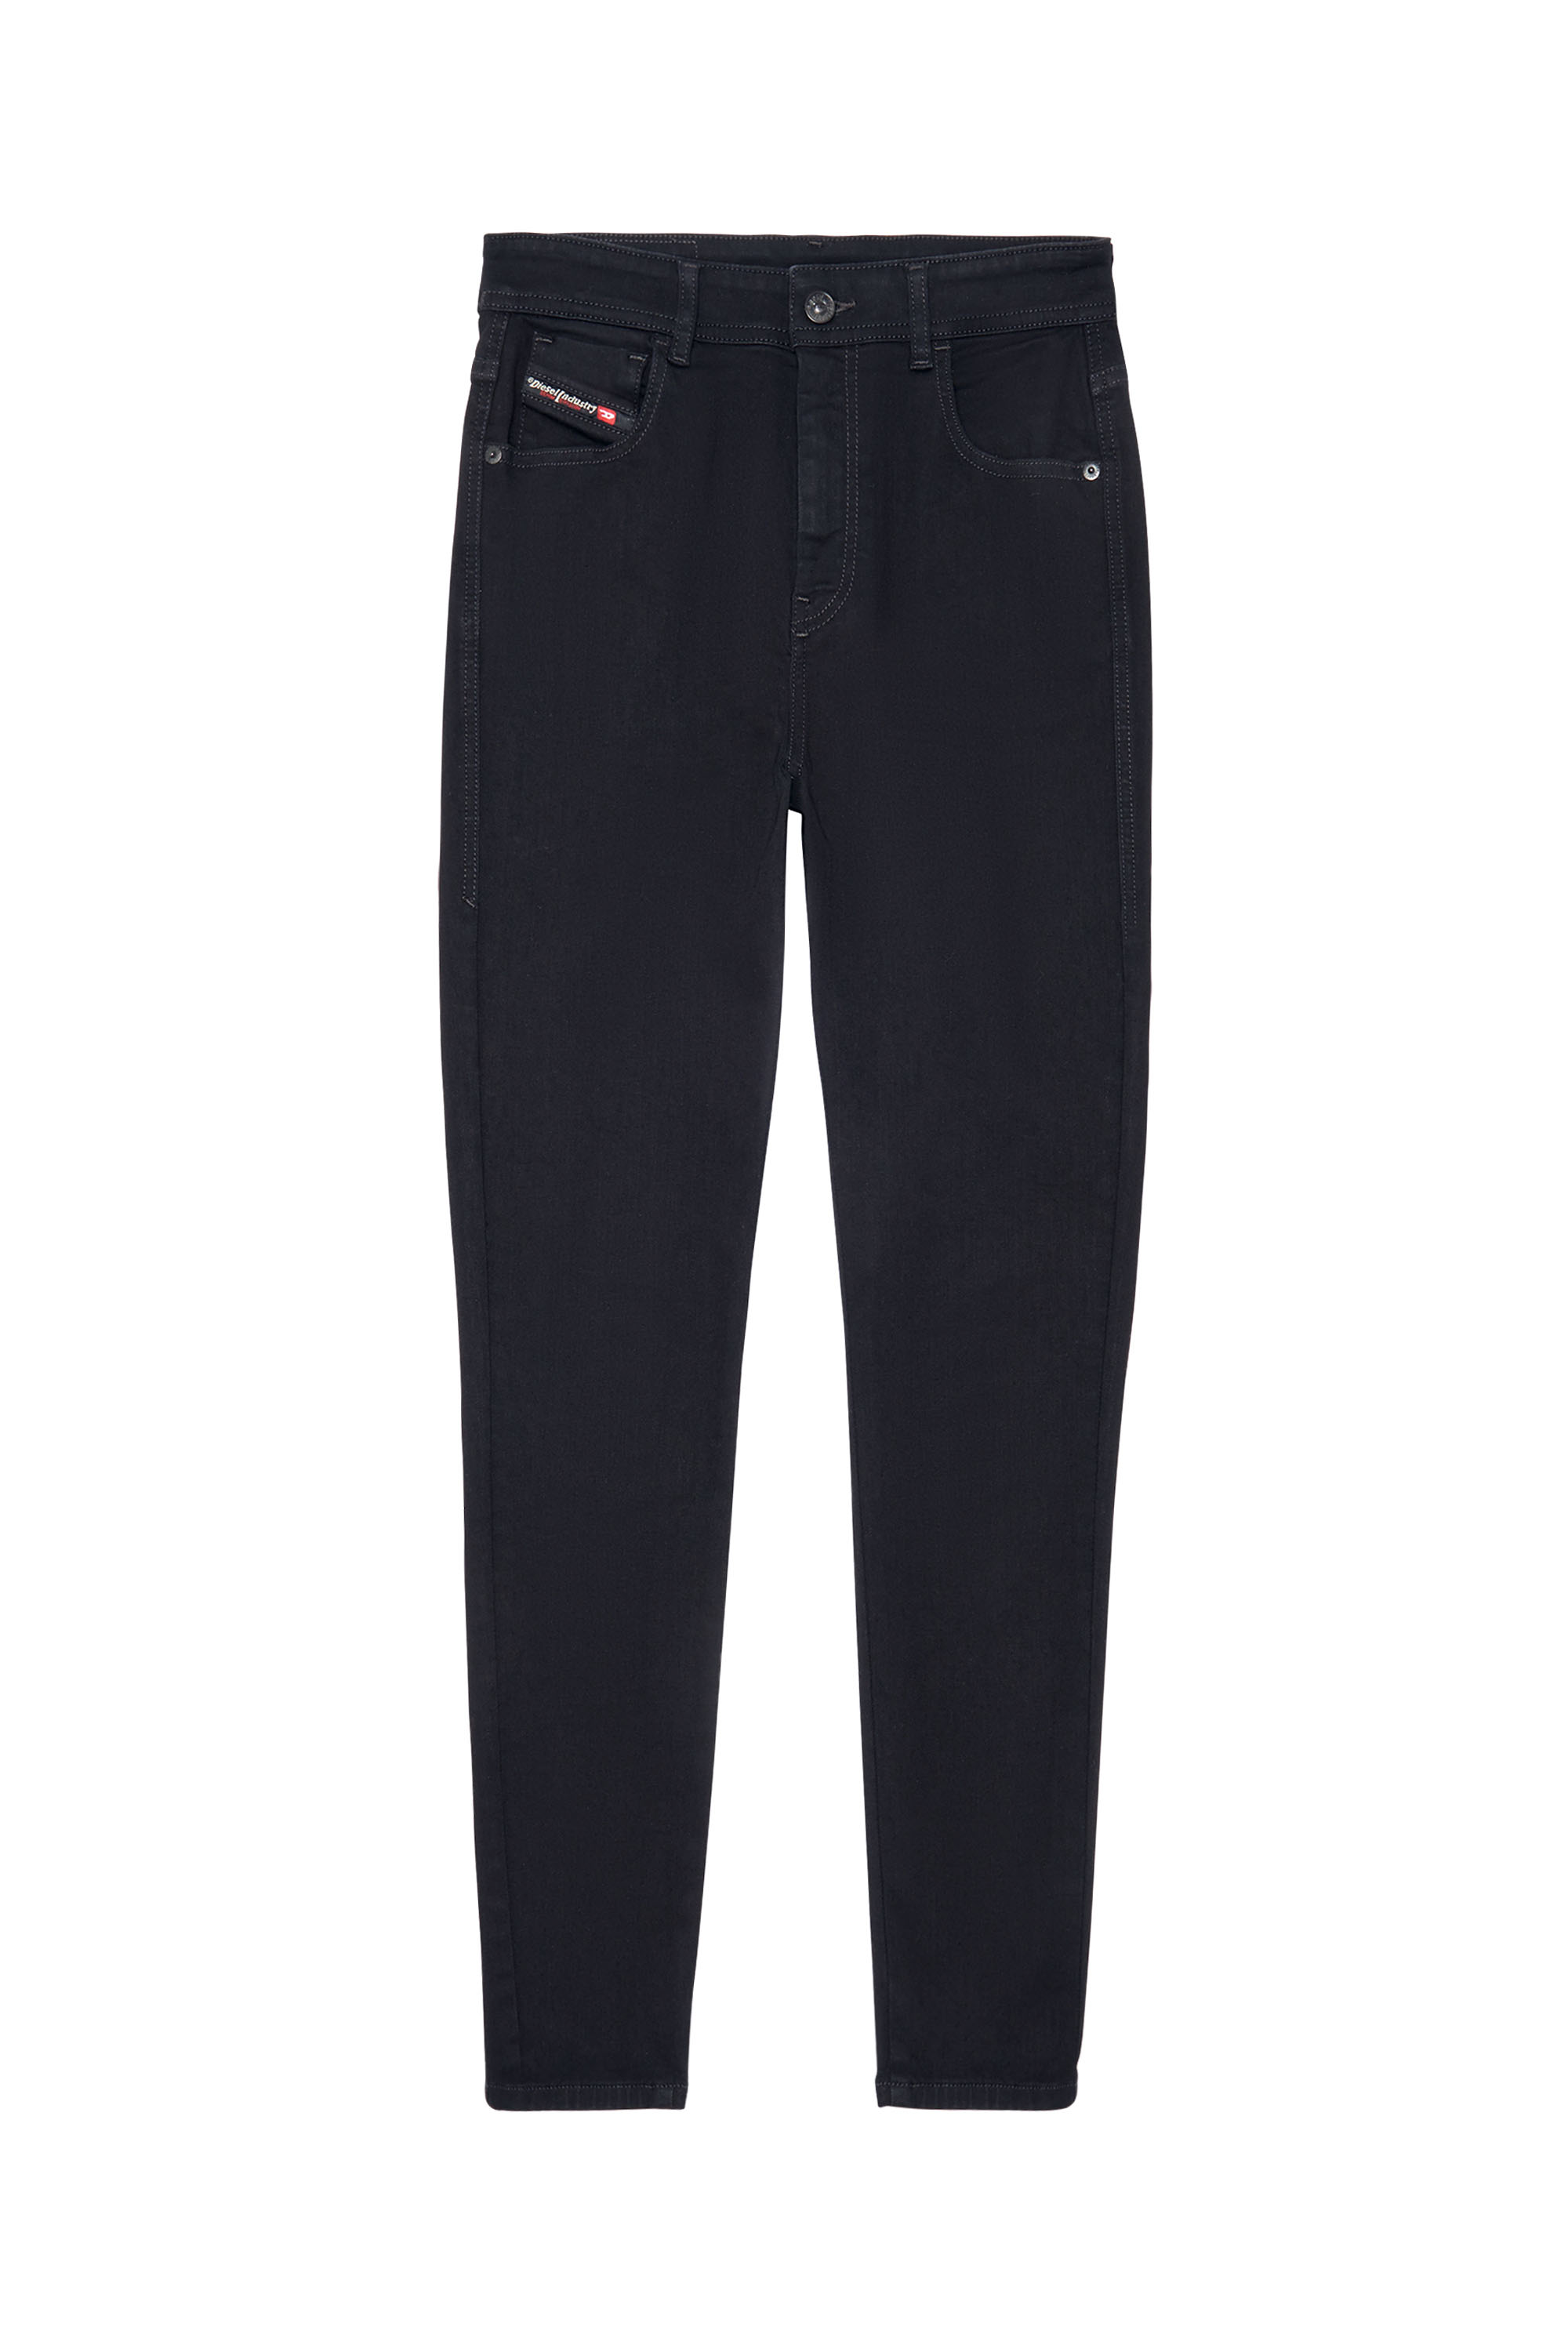 Diesel - Woman Super skinny Jeans 1984 Slandy-High 069EF, Black/Dark grey - Image 6